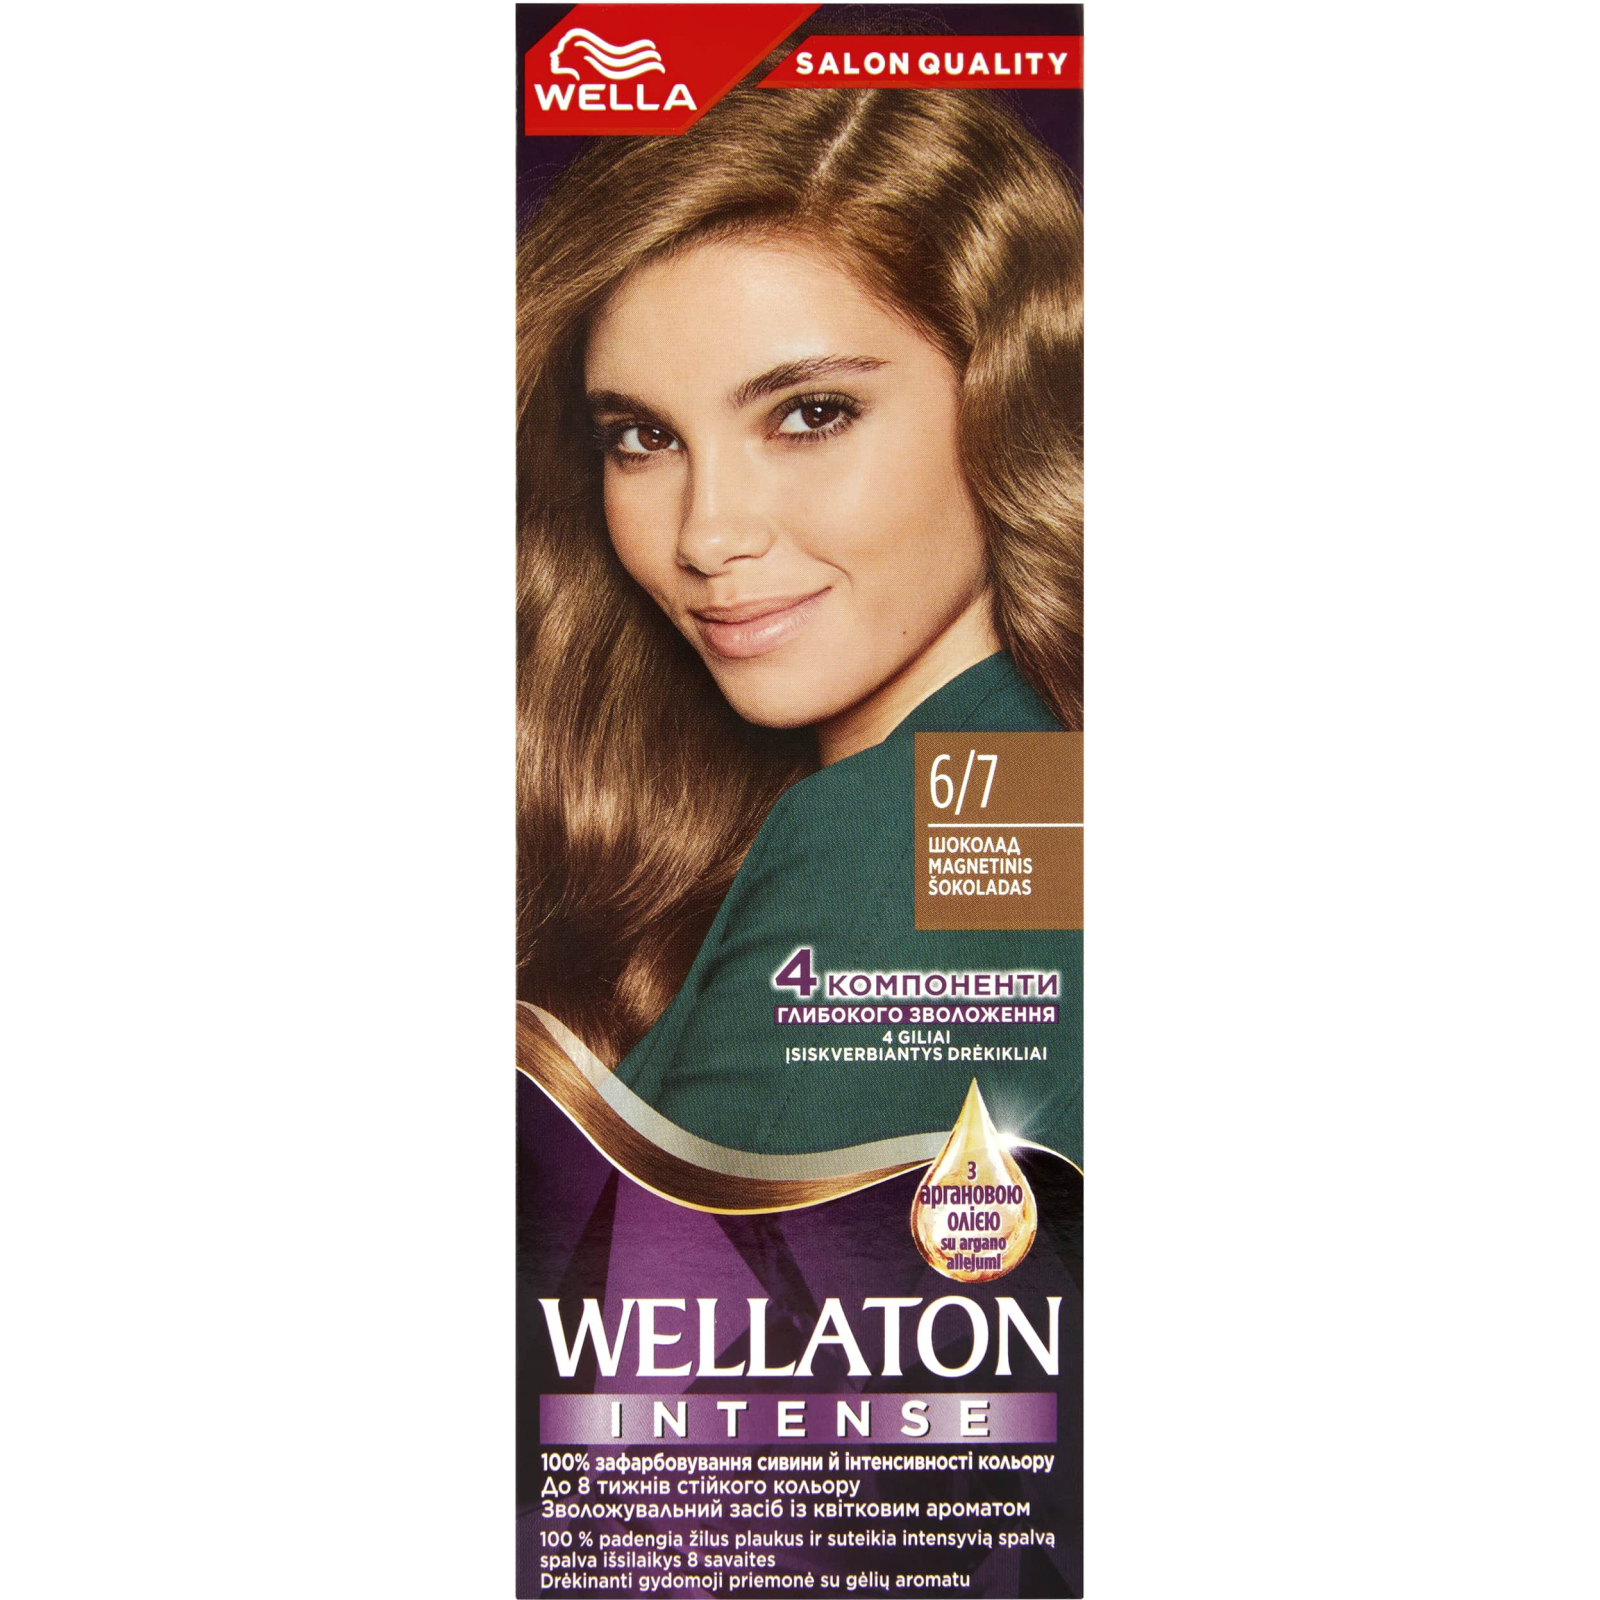 Краска для волос Wellaton 5/0 Темный дуб (4056800756704/4056800756827)